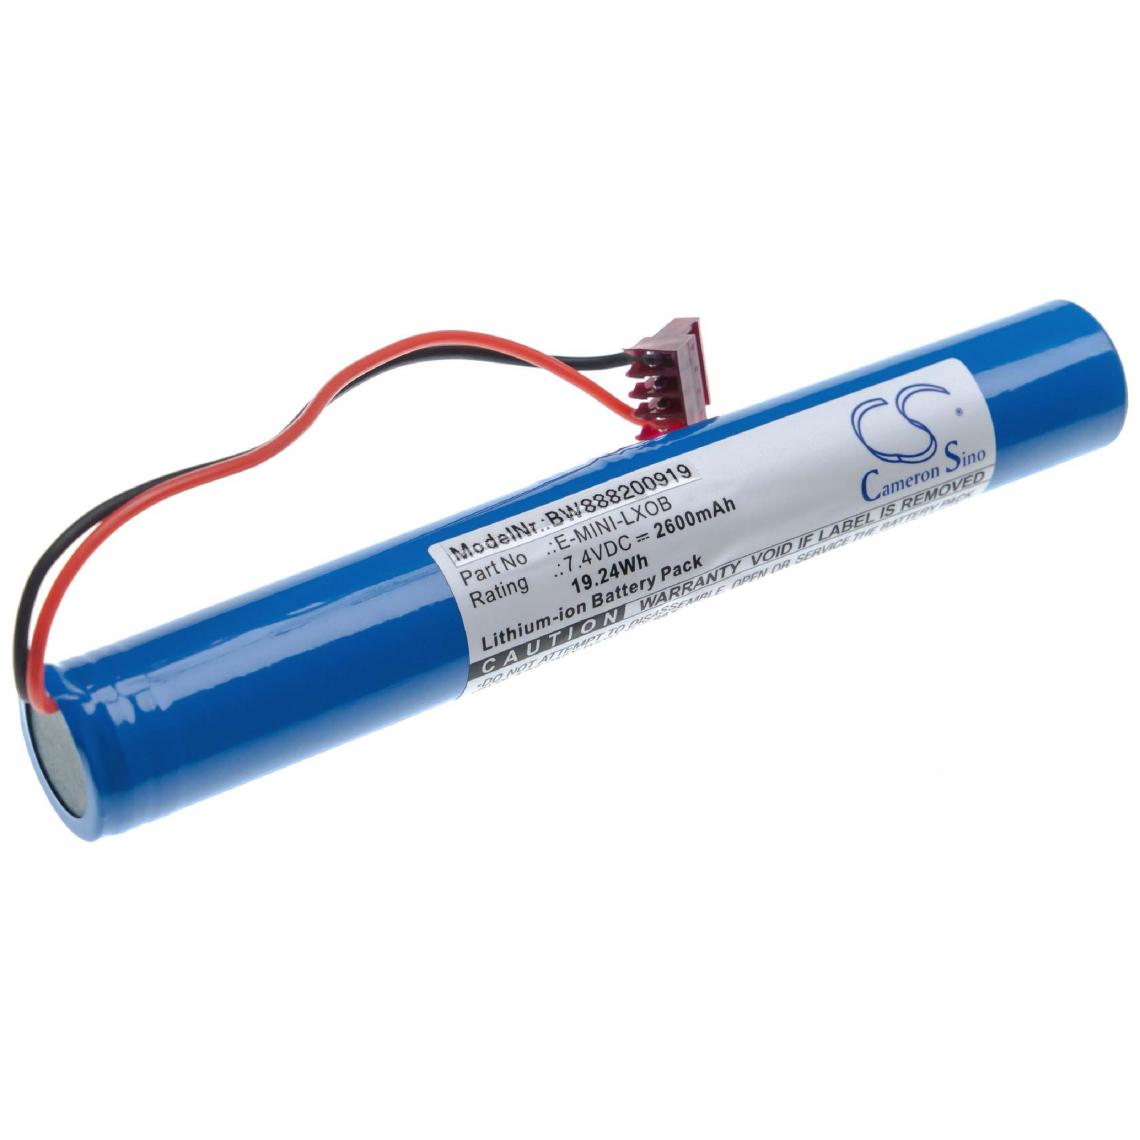 Vhbw - vhbw batterie remplace Environment E-MINI-LXOB pour systèmes de contrôleur (2600mAh, 7.4V, Li-Ion) - Piles rechargeables